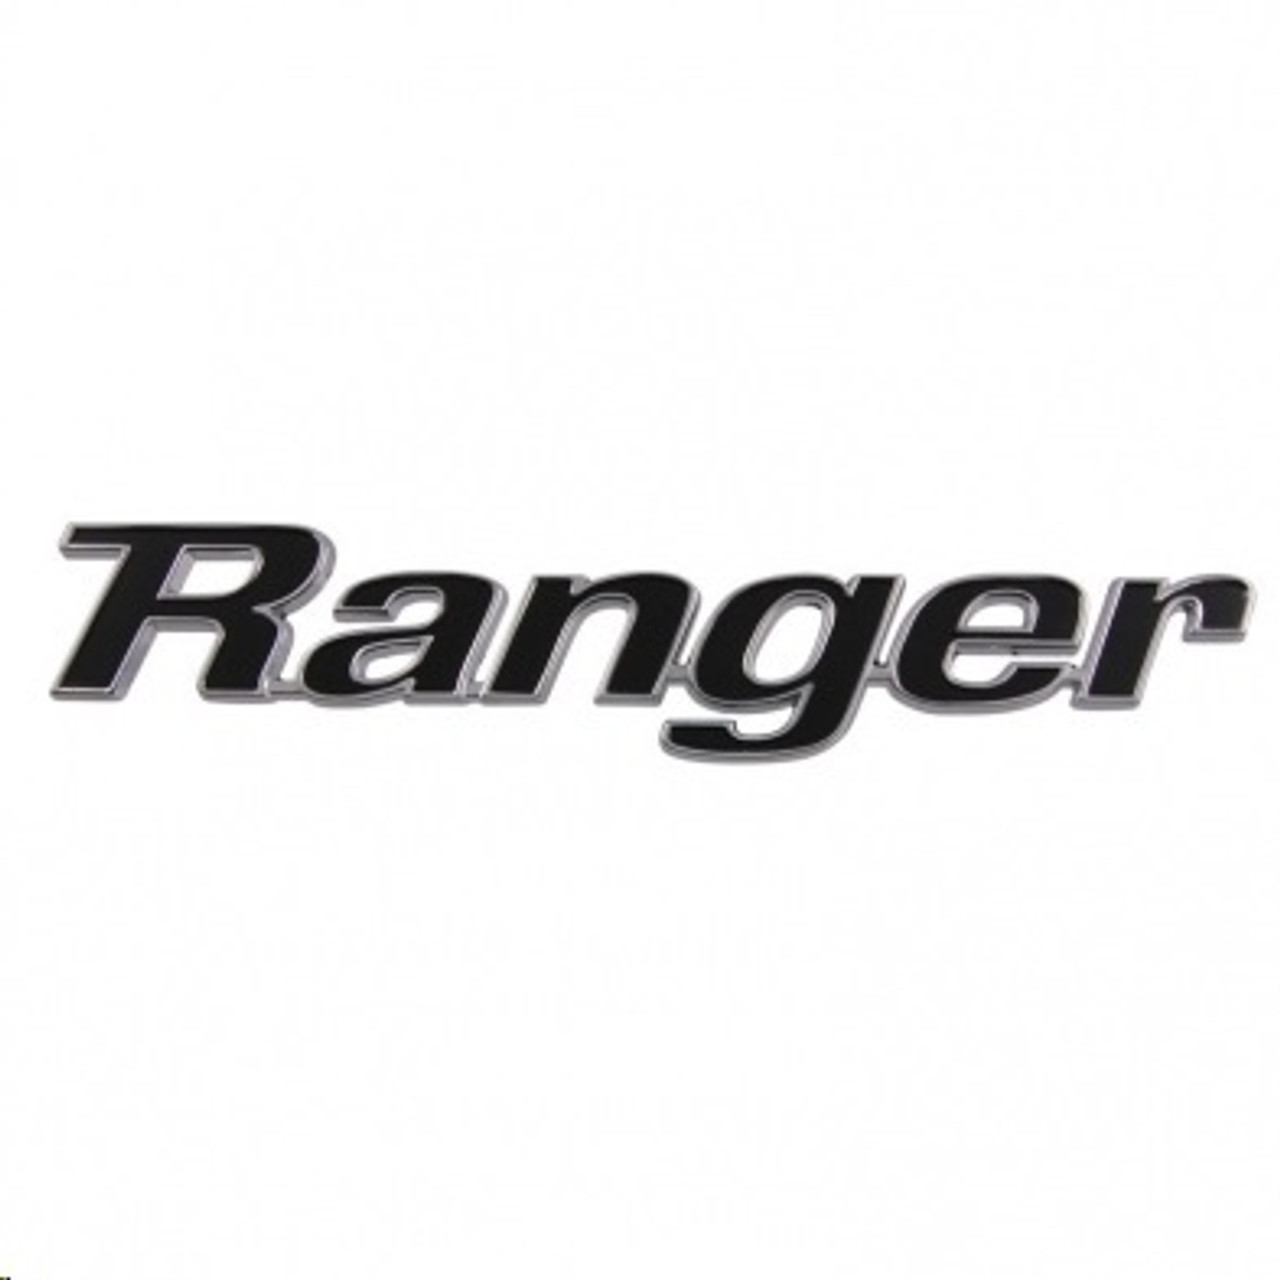 1970-72 Ford Truck "Ranger" Bed Side Panel Emblem ea.